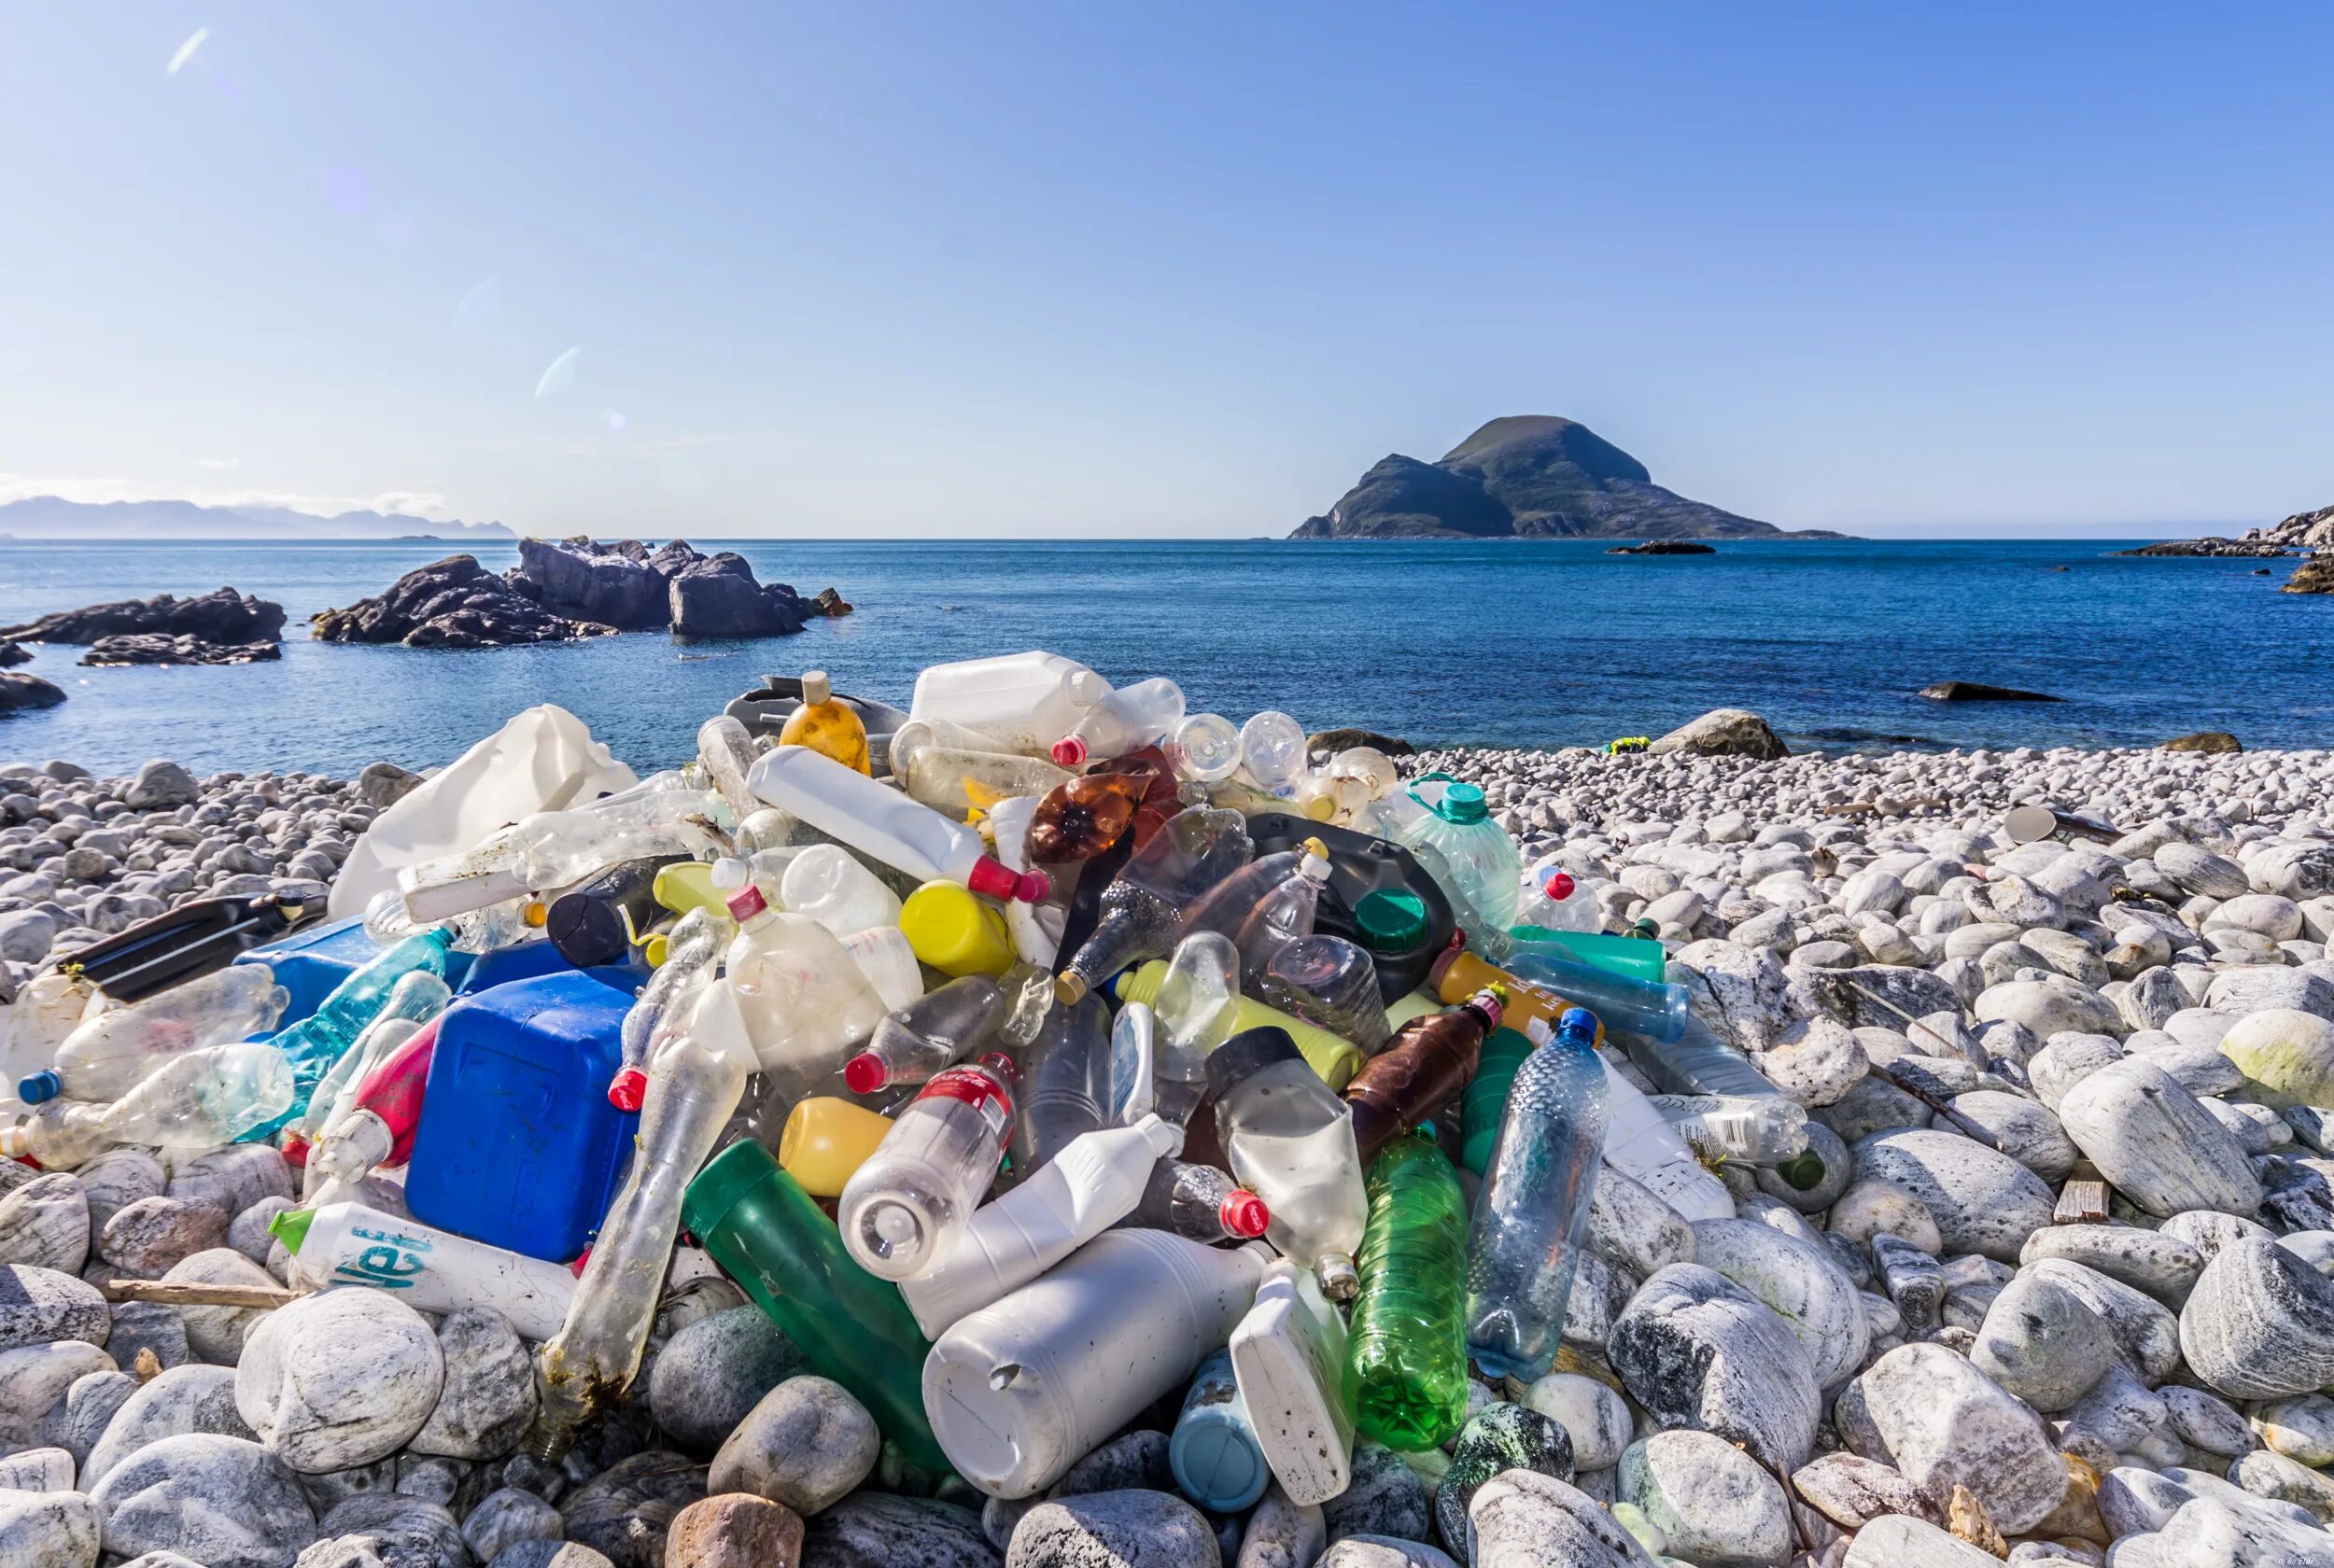 Бухта стеклянная Владивосток. Пластмасса в океане. Загрязнение мирового океана пластиком. Глобальная проблема отходы